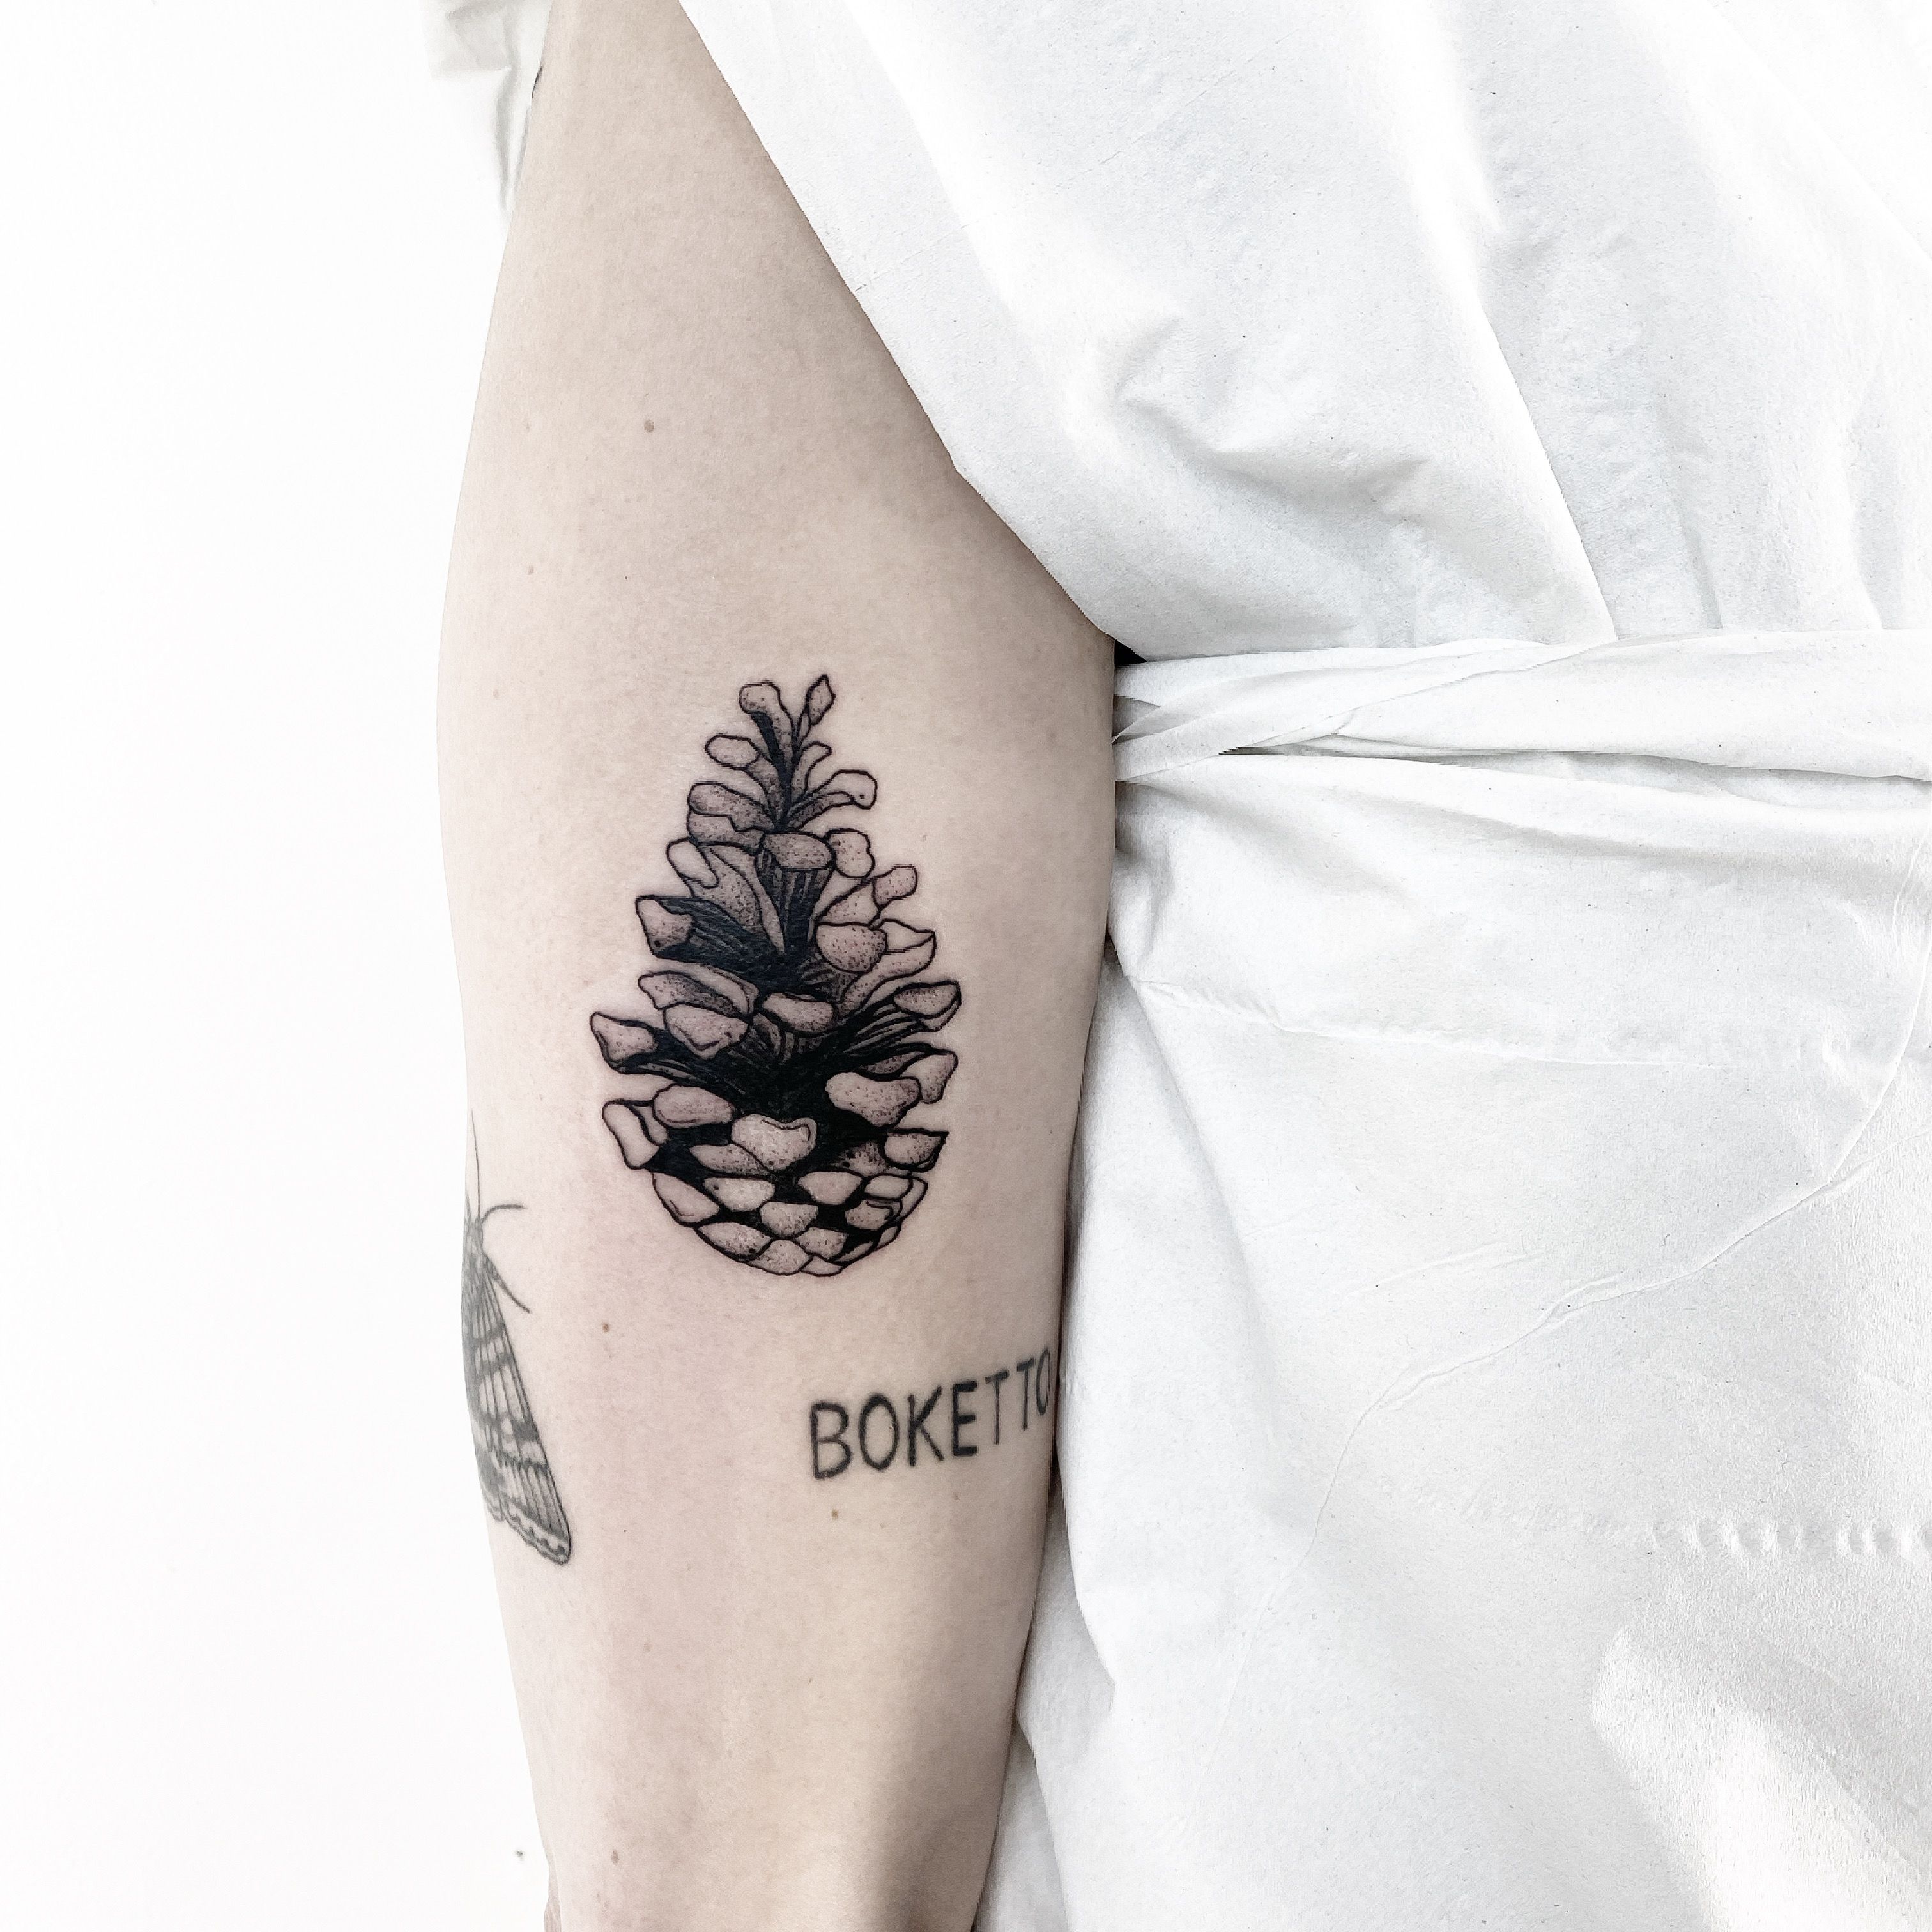 Shannon Harmon • Tattoo Artist • Tattoodo